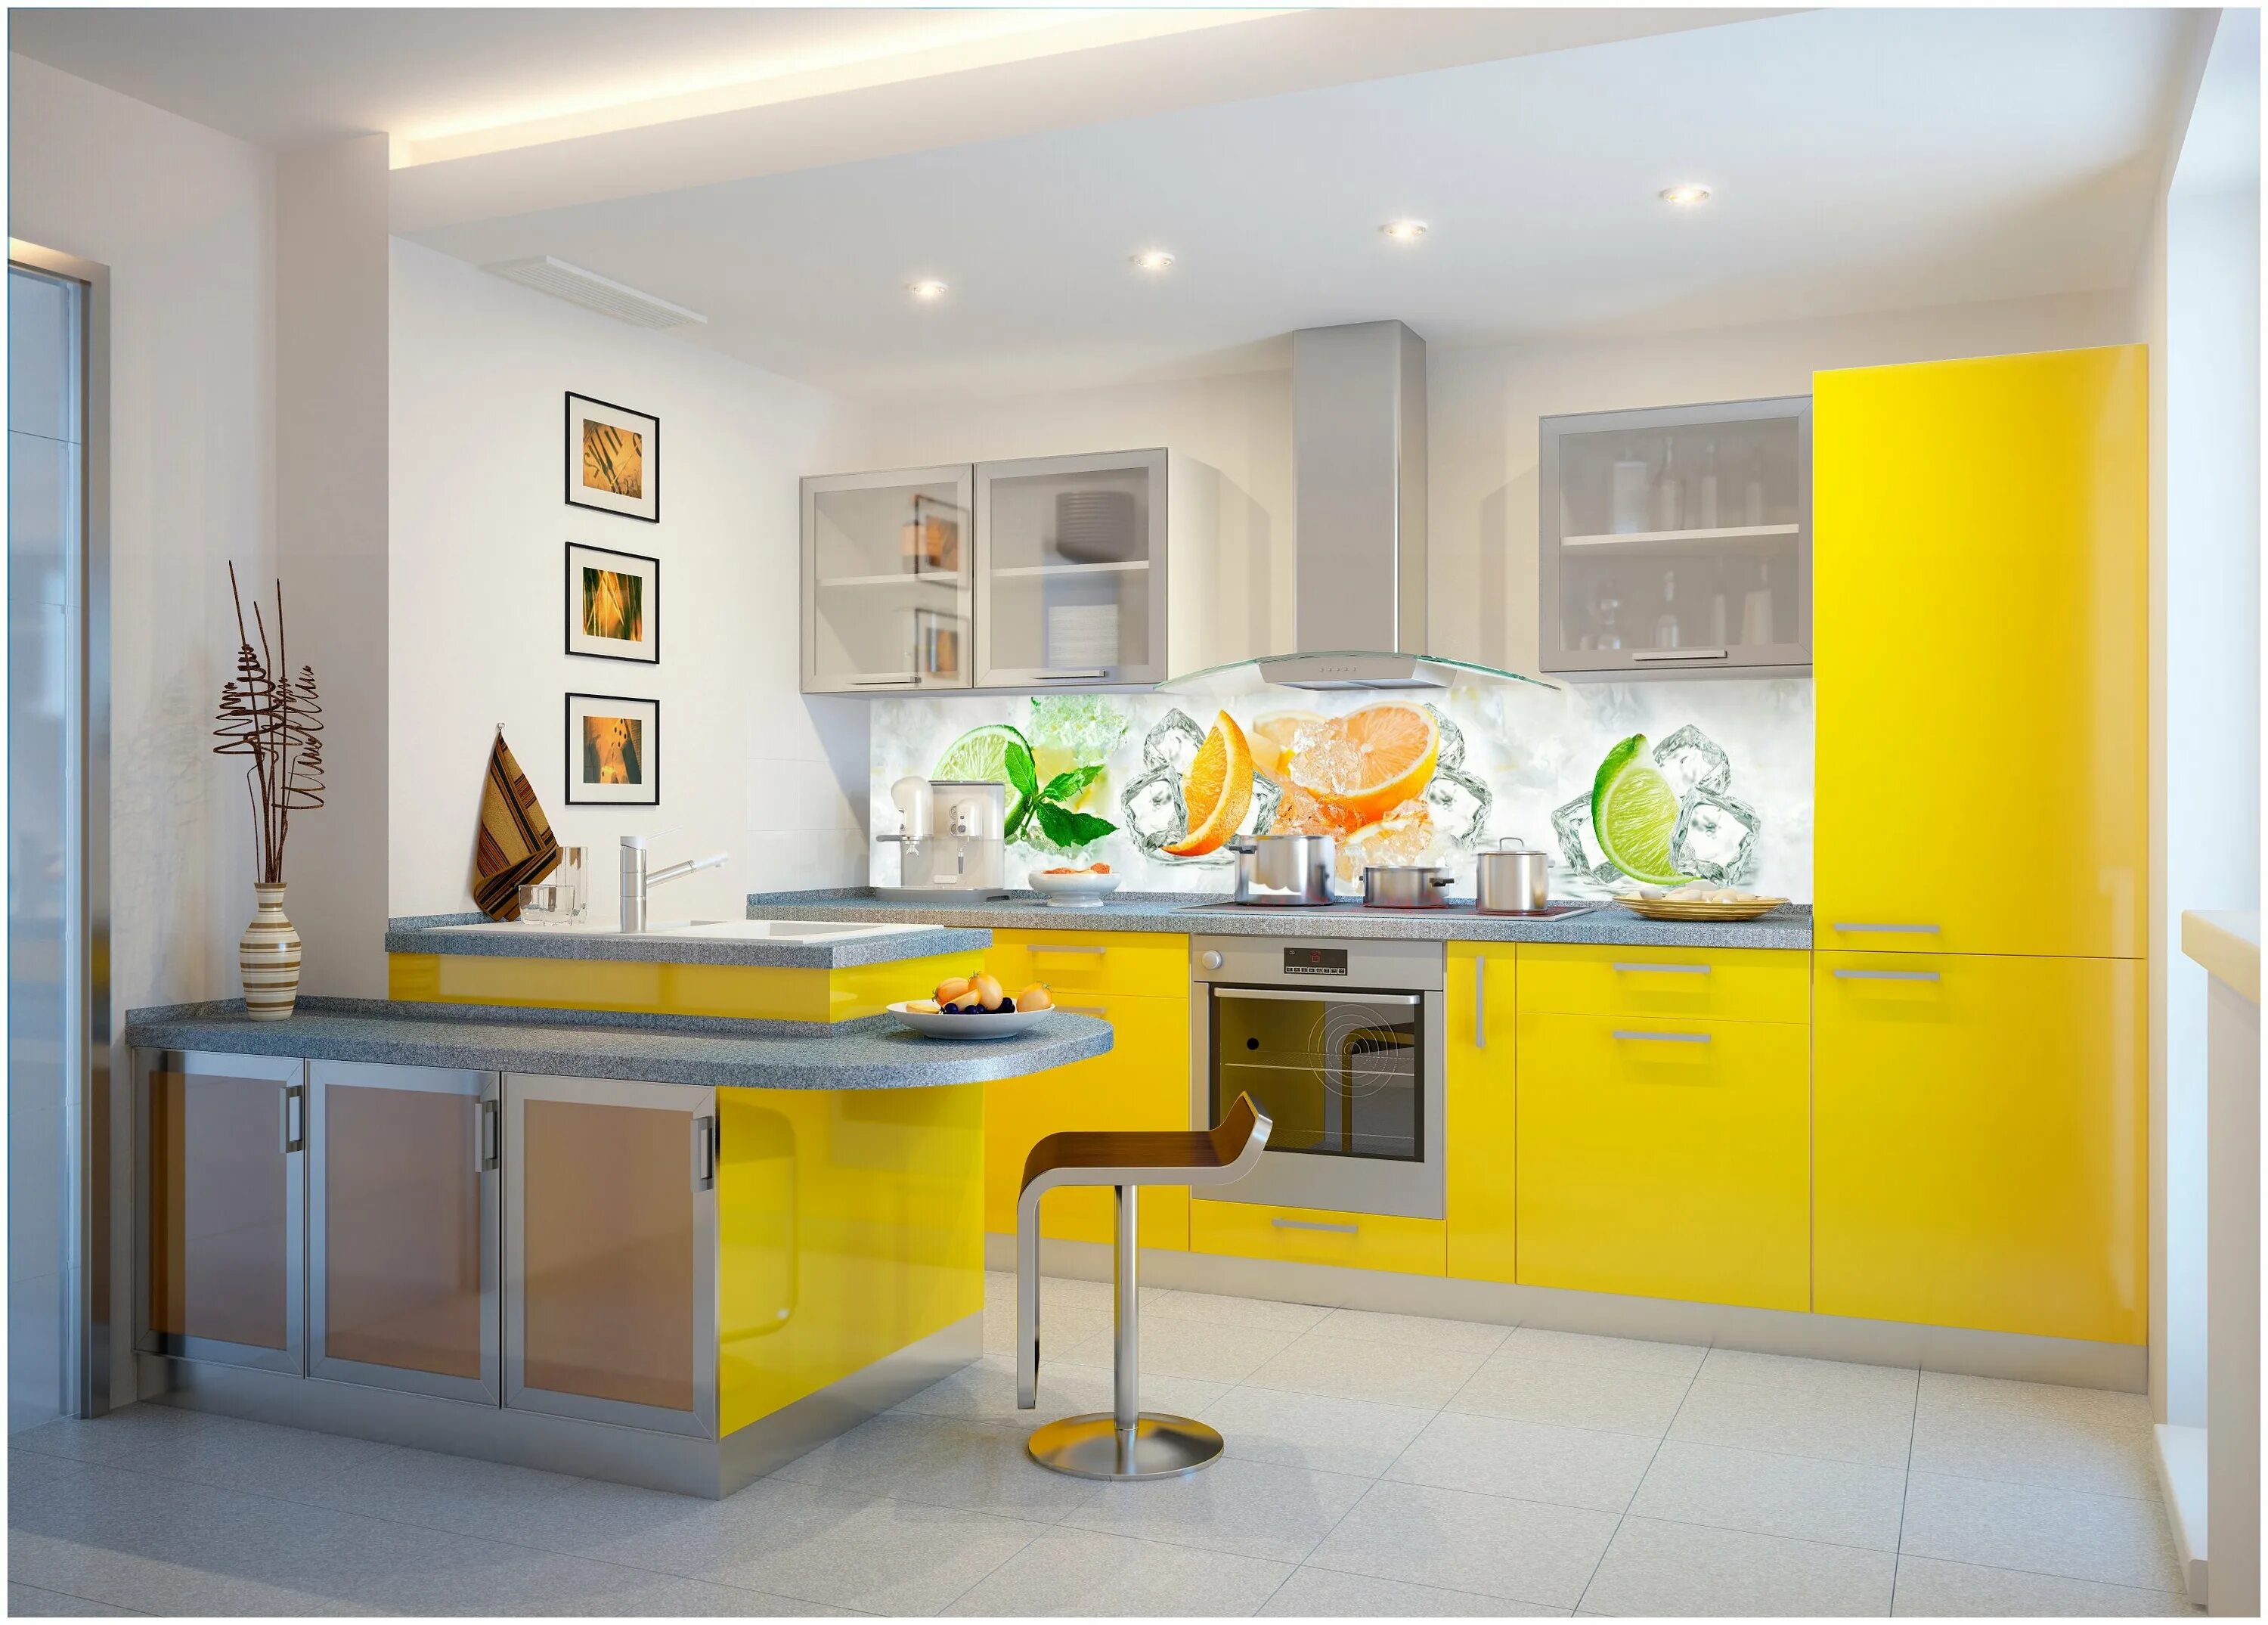 Купить желтую кухню. Желтые кухни. Желтый кухонный гарнитур. Кухонный гарнитур желтого цвета. Кухня в желтом цвете.